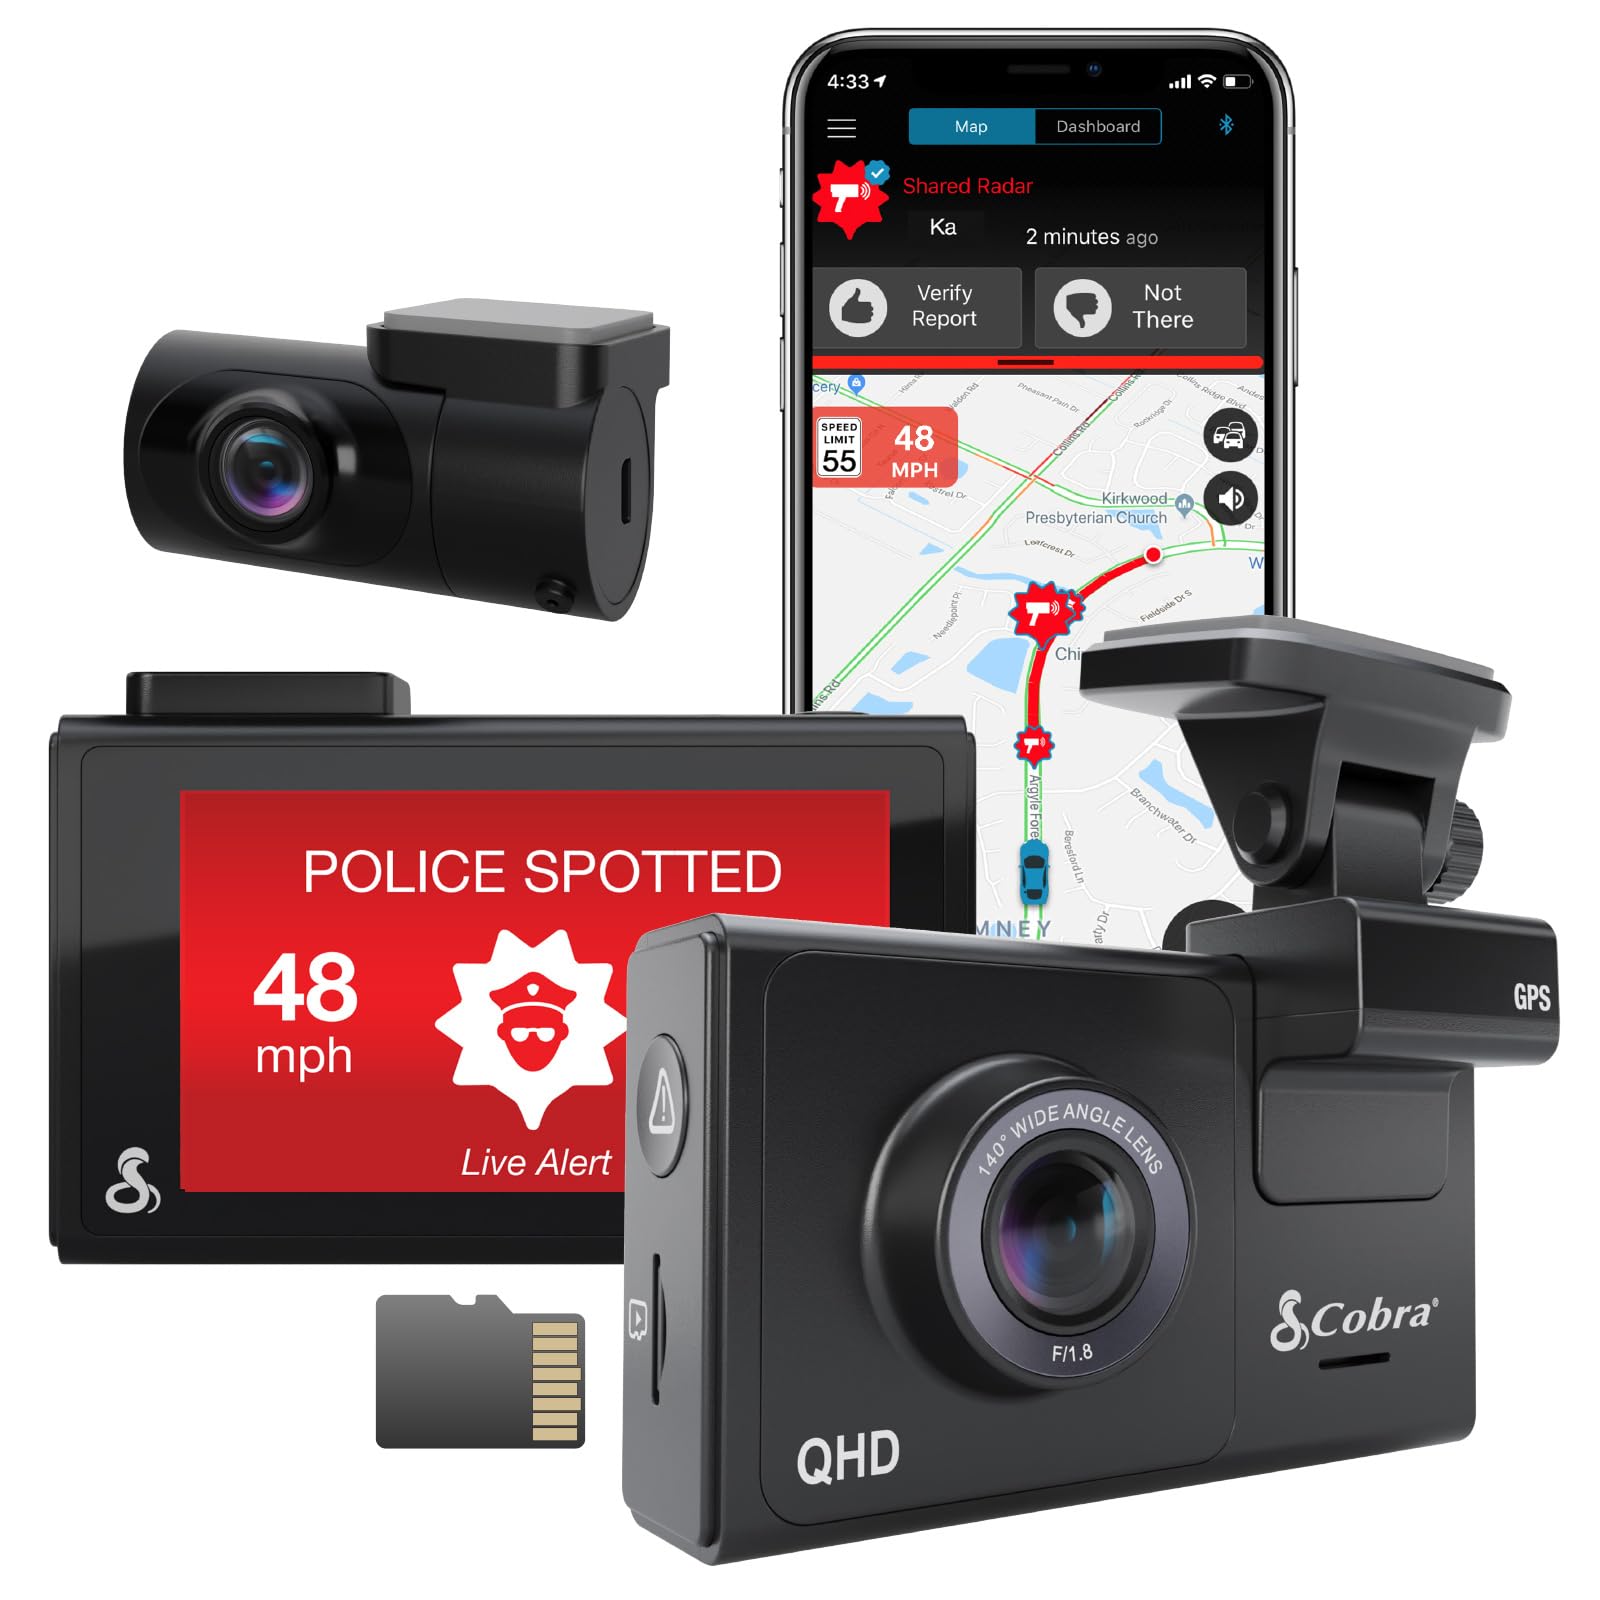 Cobra Smart Dashcam Autokamera + hinten Kamera QHD+ Video 1600P Auflösung, Sprachsteuerung, integriertes WiFi & GPS, 16GB SD Karte, 3" Display, gemeinsame Alarme, Notfall MayDay, Drive Smarter App von COBRA